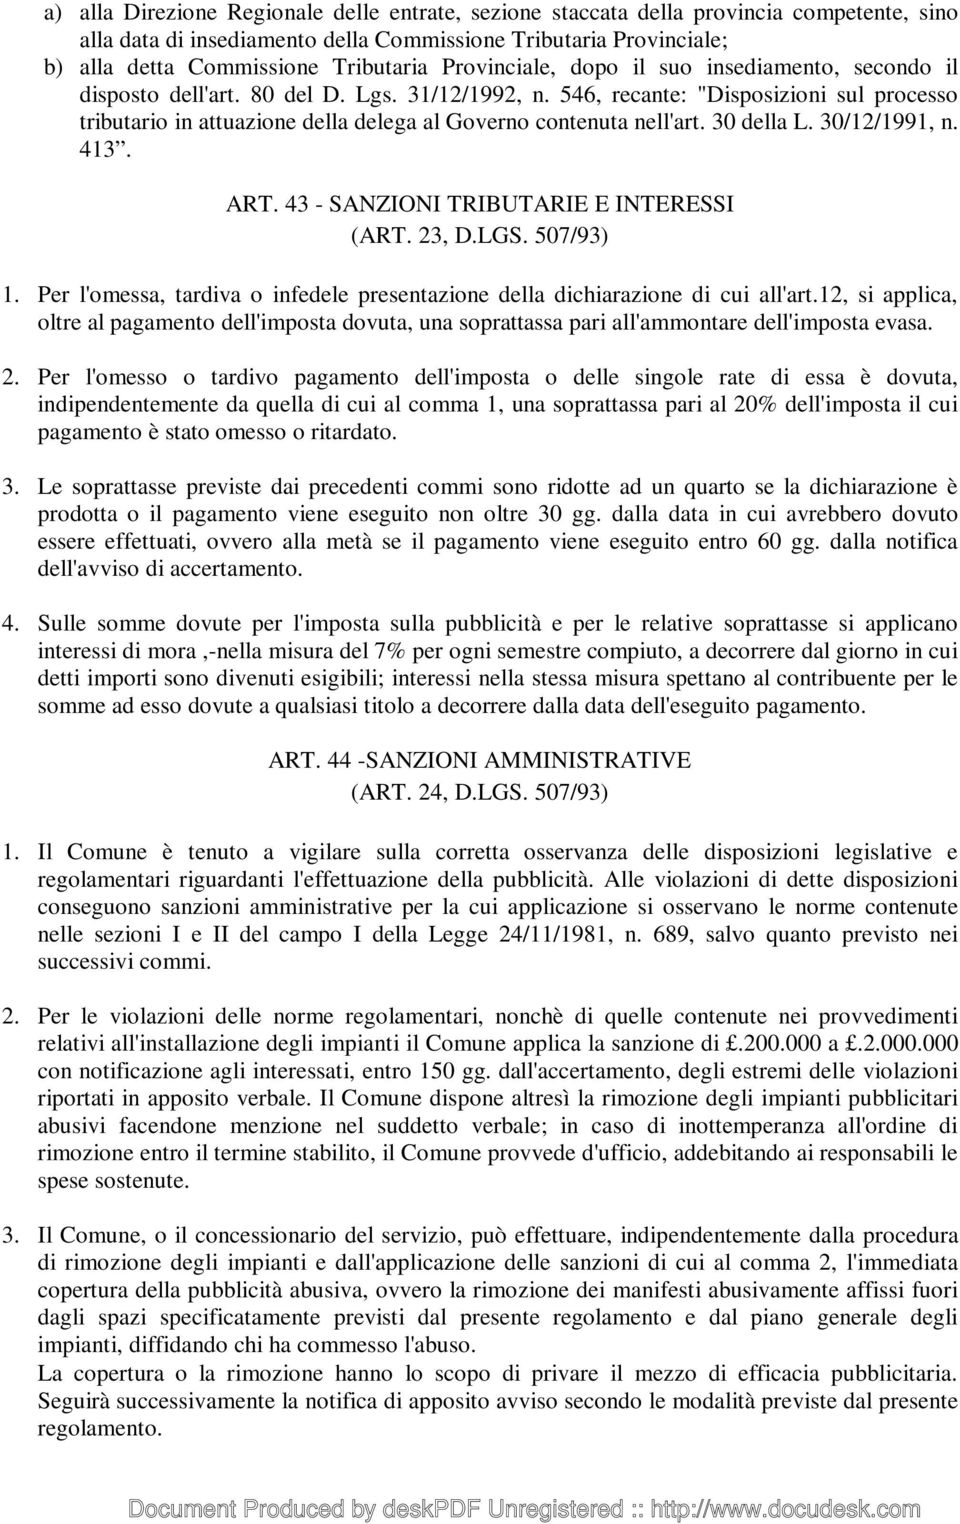 546, recante: "Disposizioni sul processo tributario in attuazione della delega al Governo contenuta nell'art. 30 della L. 30/12/1991, n. 413. ART. 43 - SANZIONI TRIBUTARIE E INTERESSI (ART. 23, D.LGS.